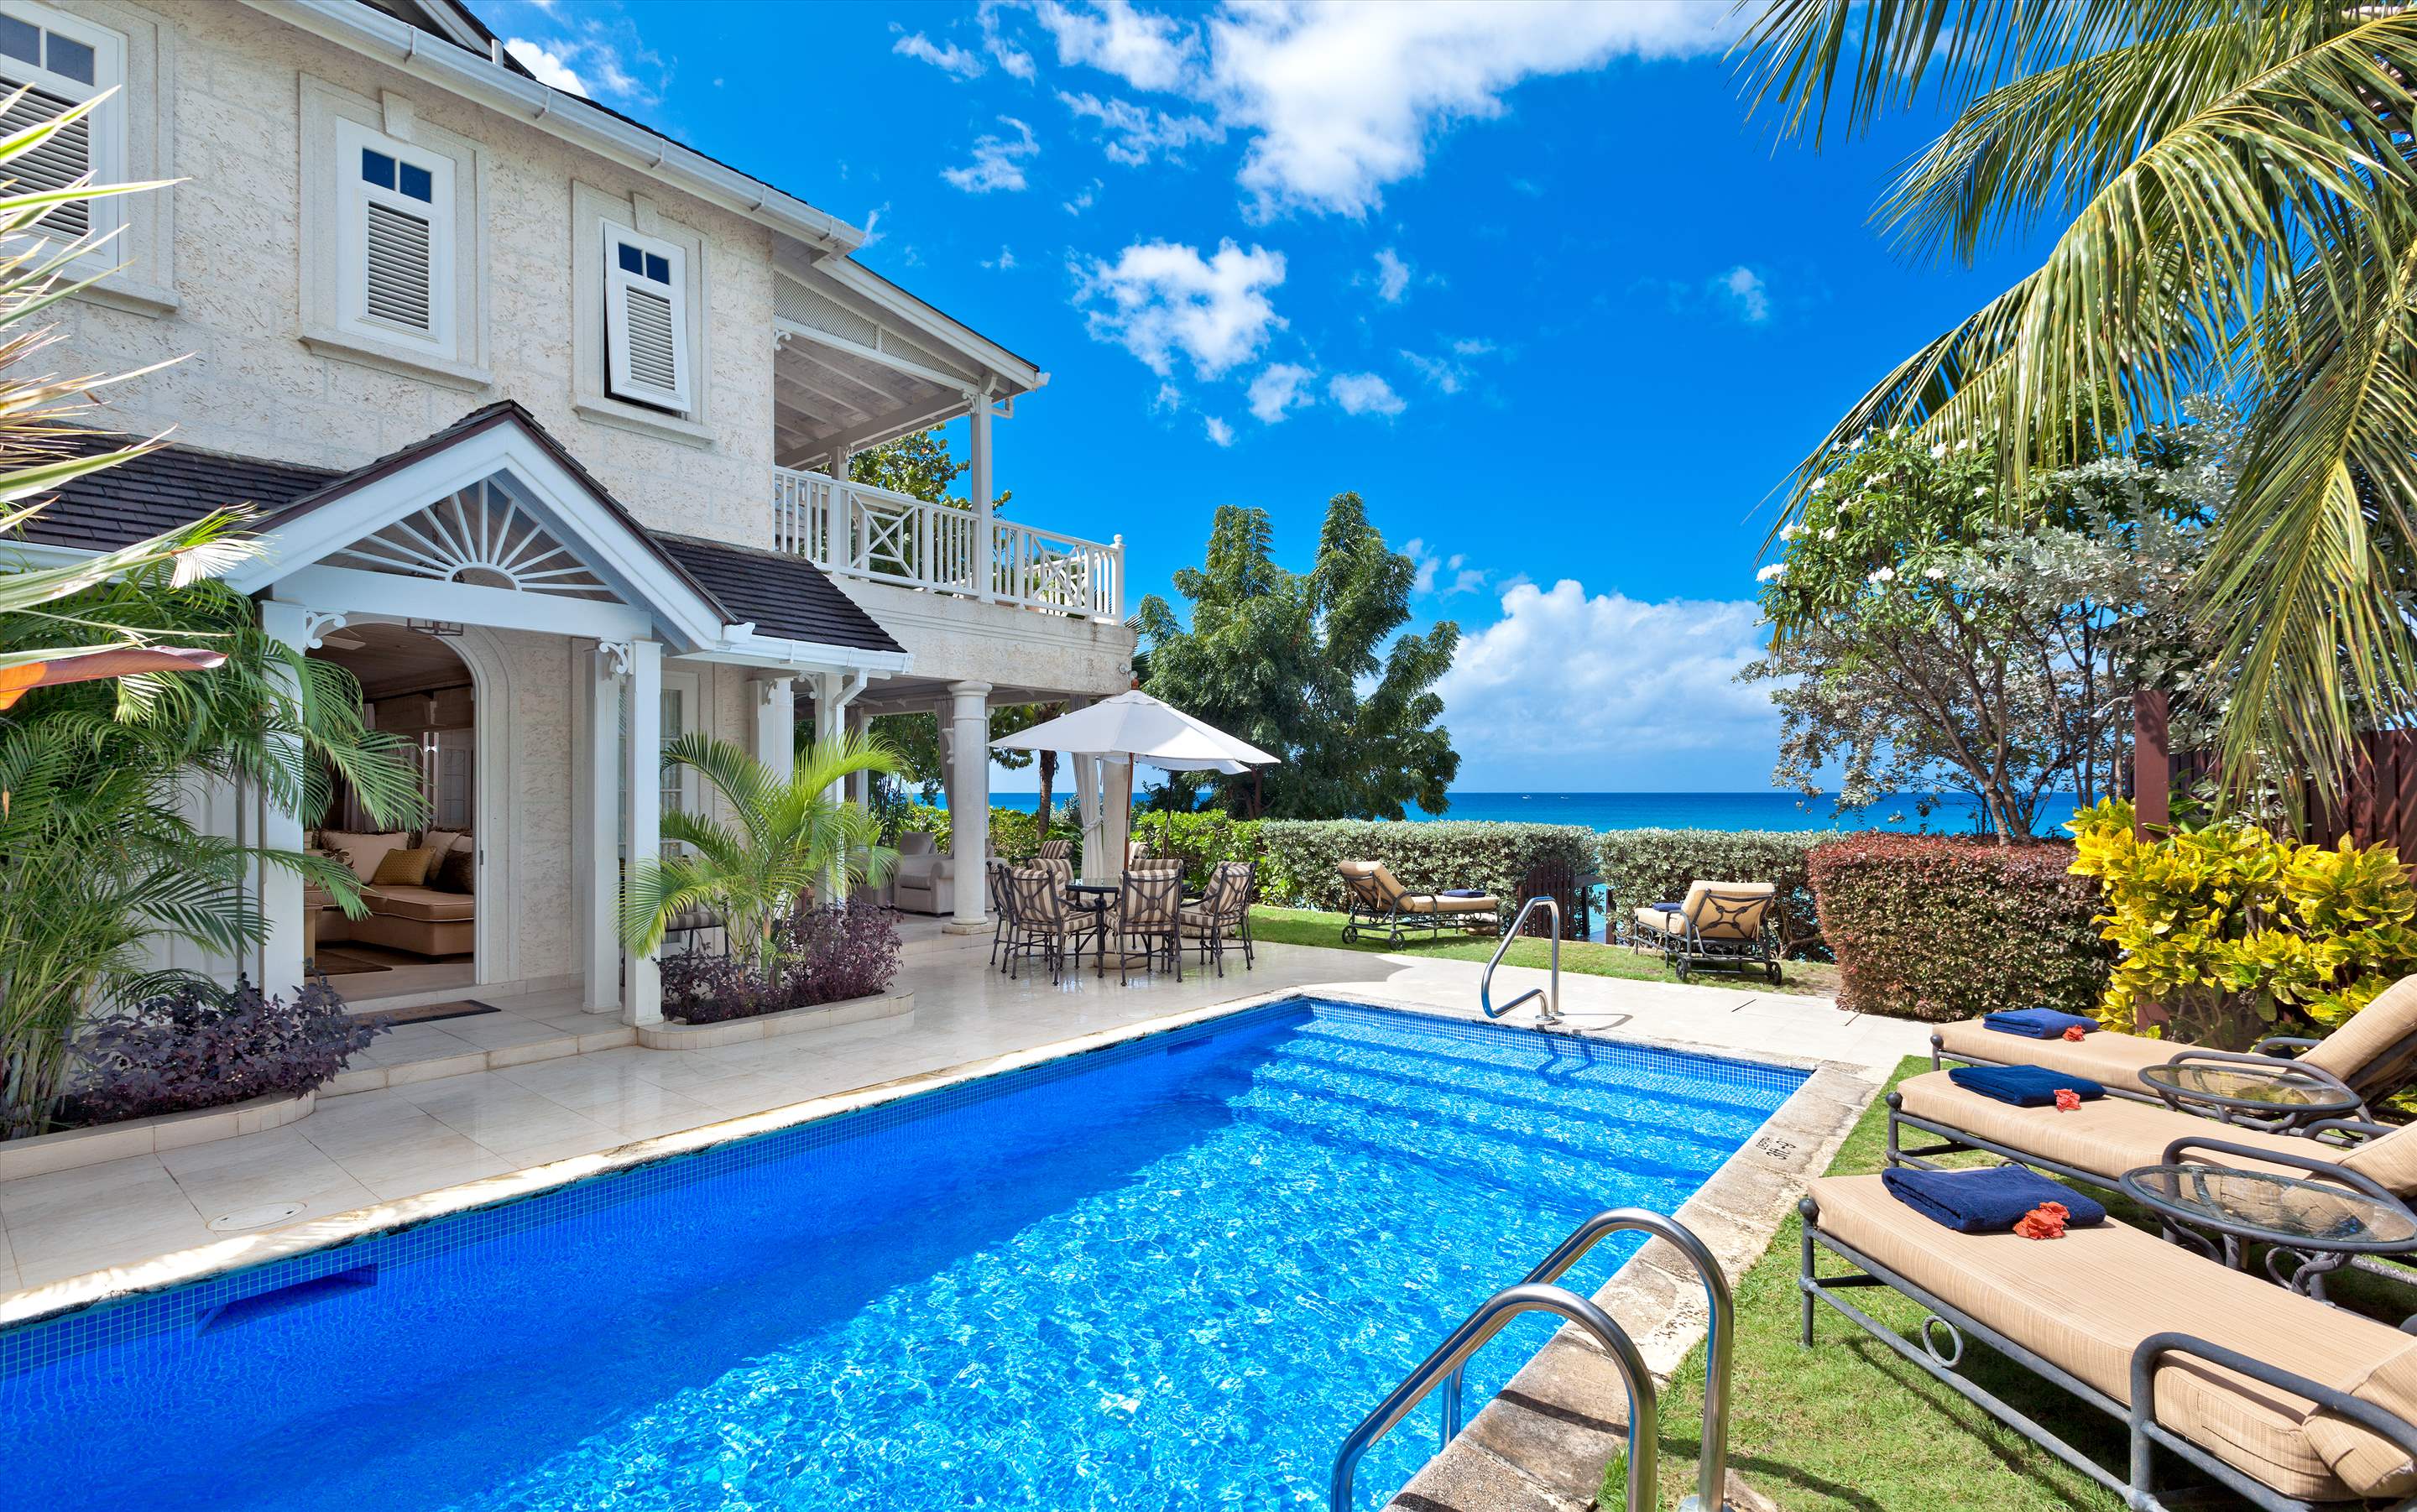 Westhaven, 4 bedroom villa in St. James & West Coast, Barbados